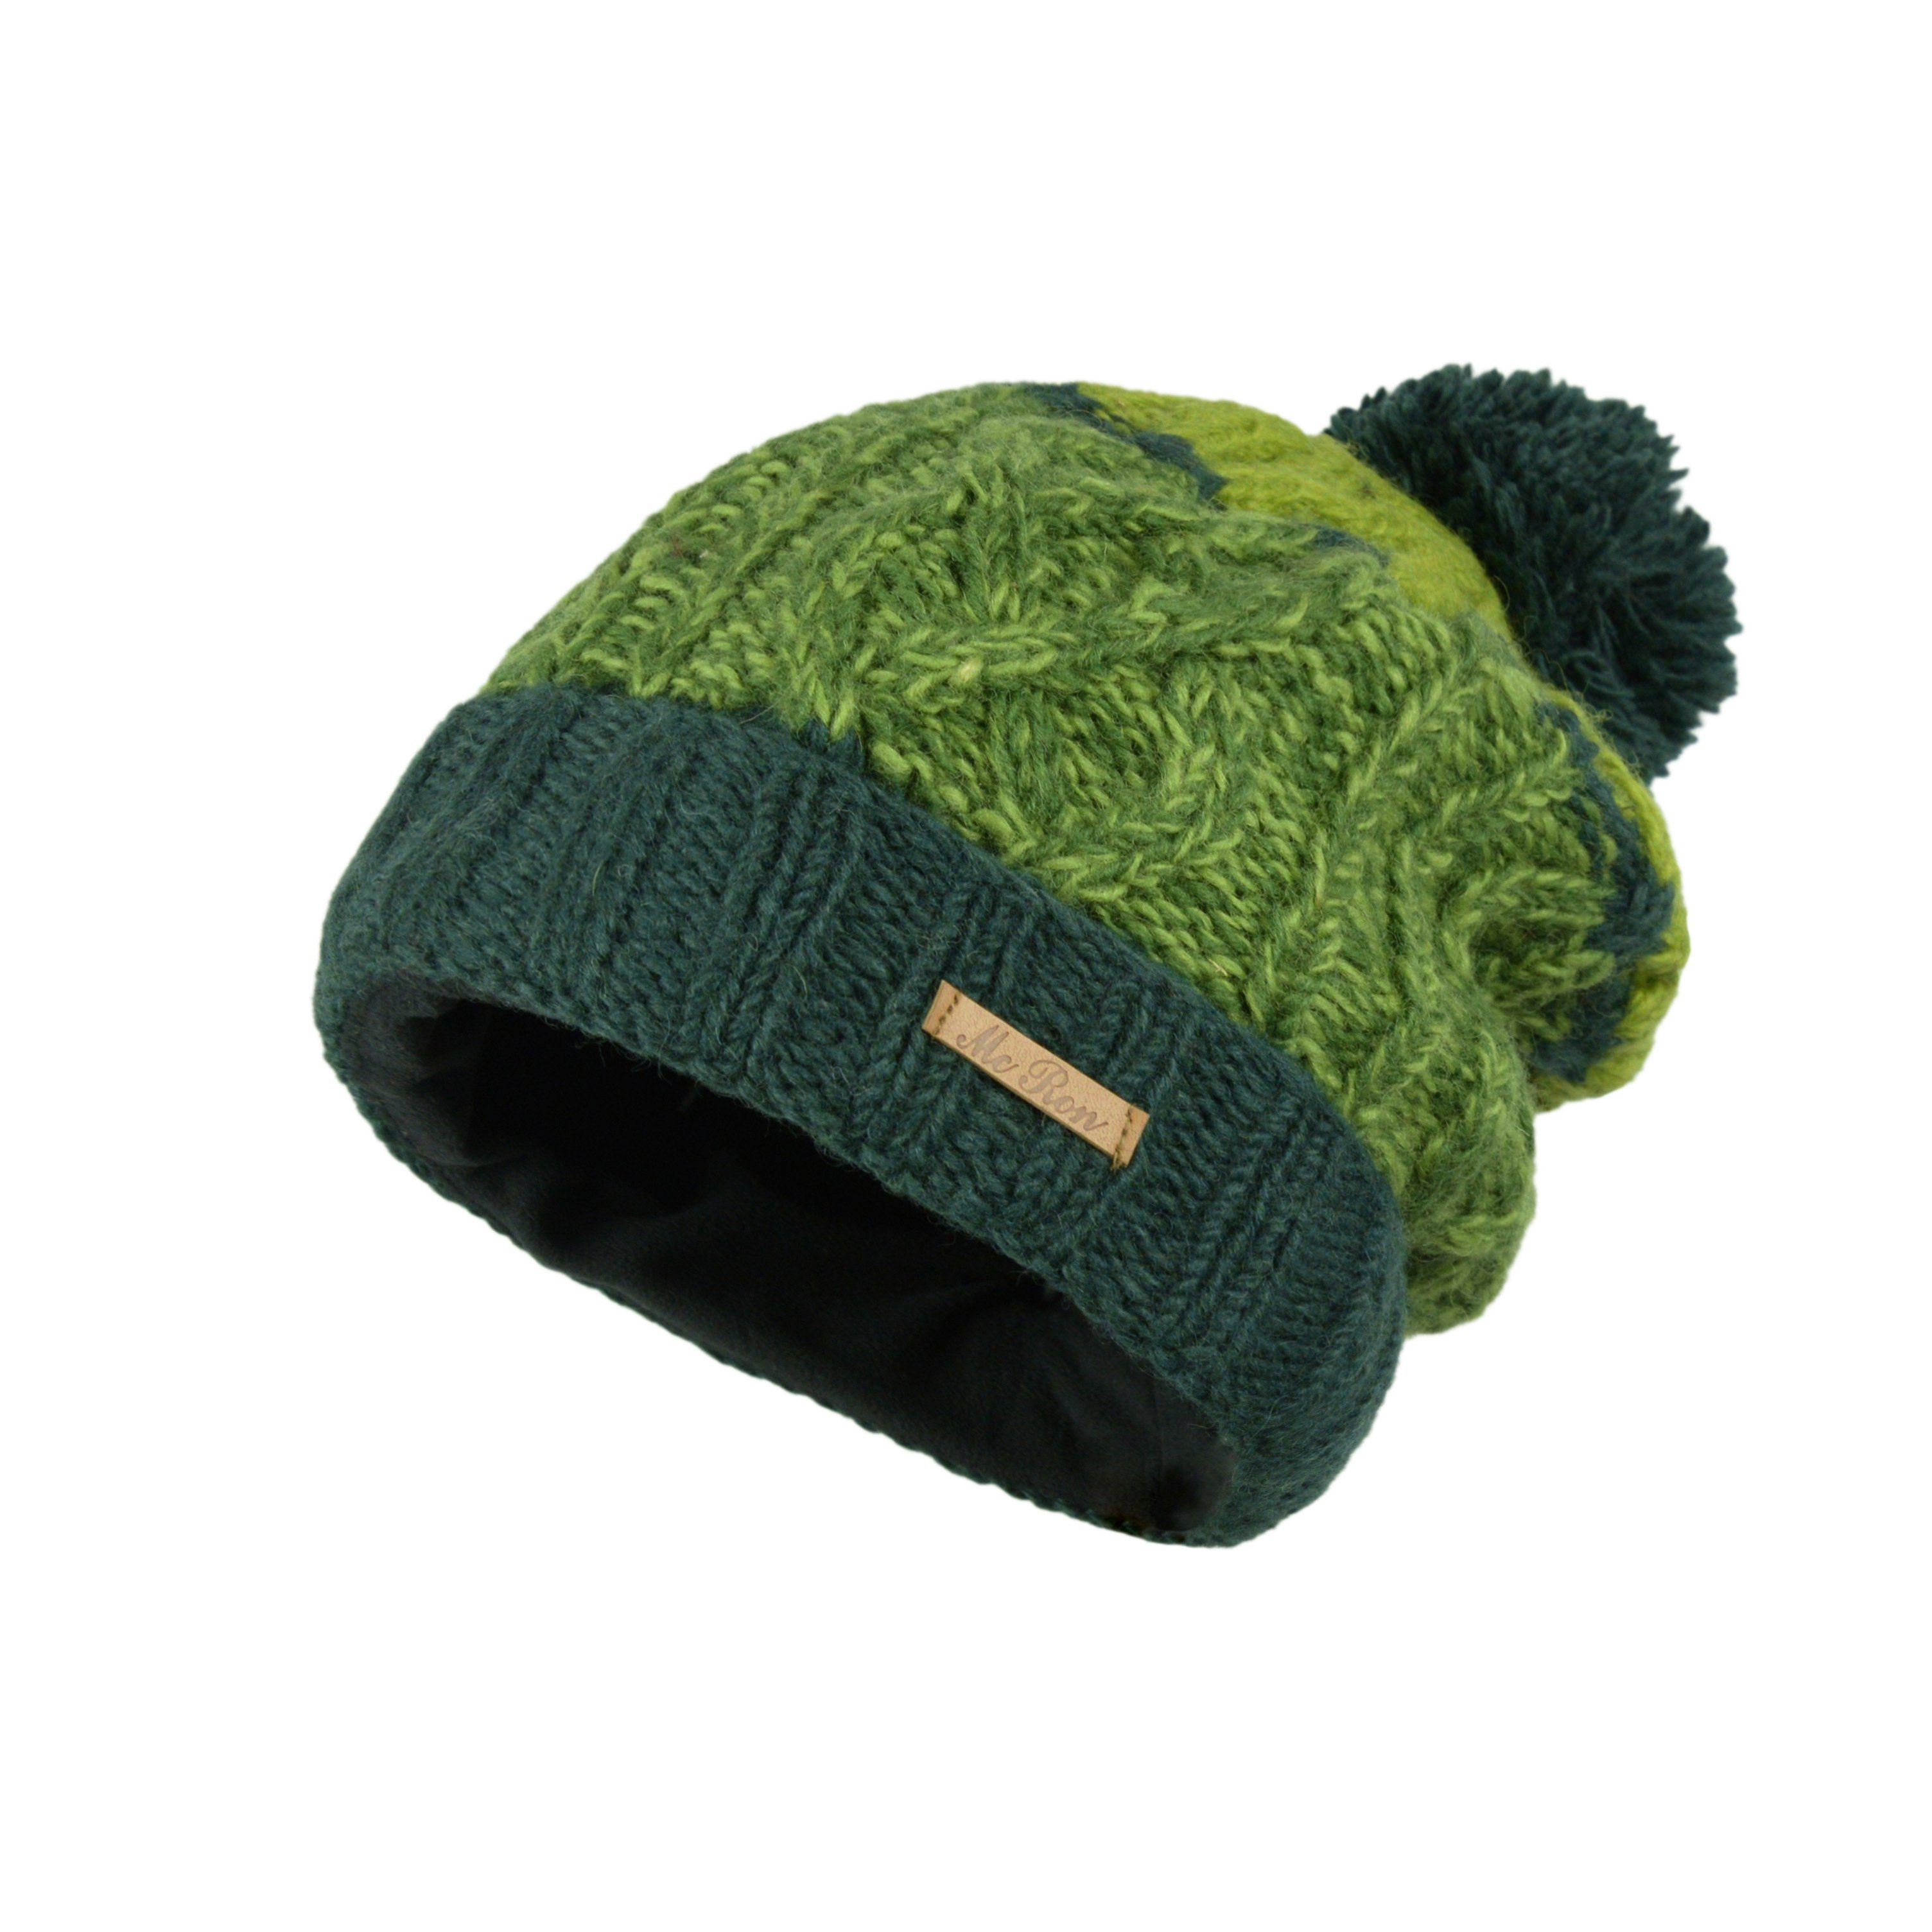 Tavis Strickmütze Modell Umschlag mit McRon mit Bommel Grün Wollmütze Farbenfrohe